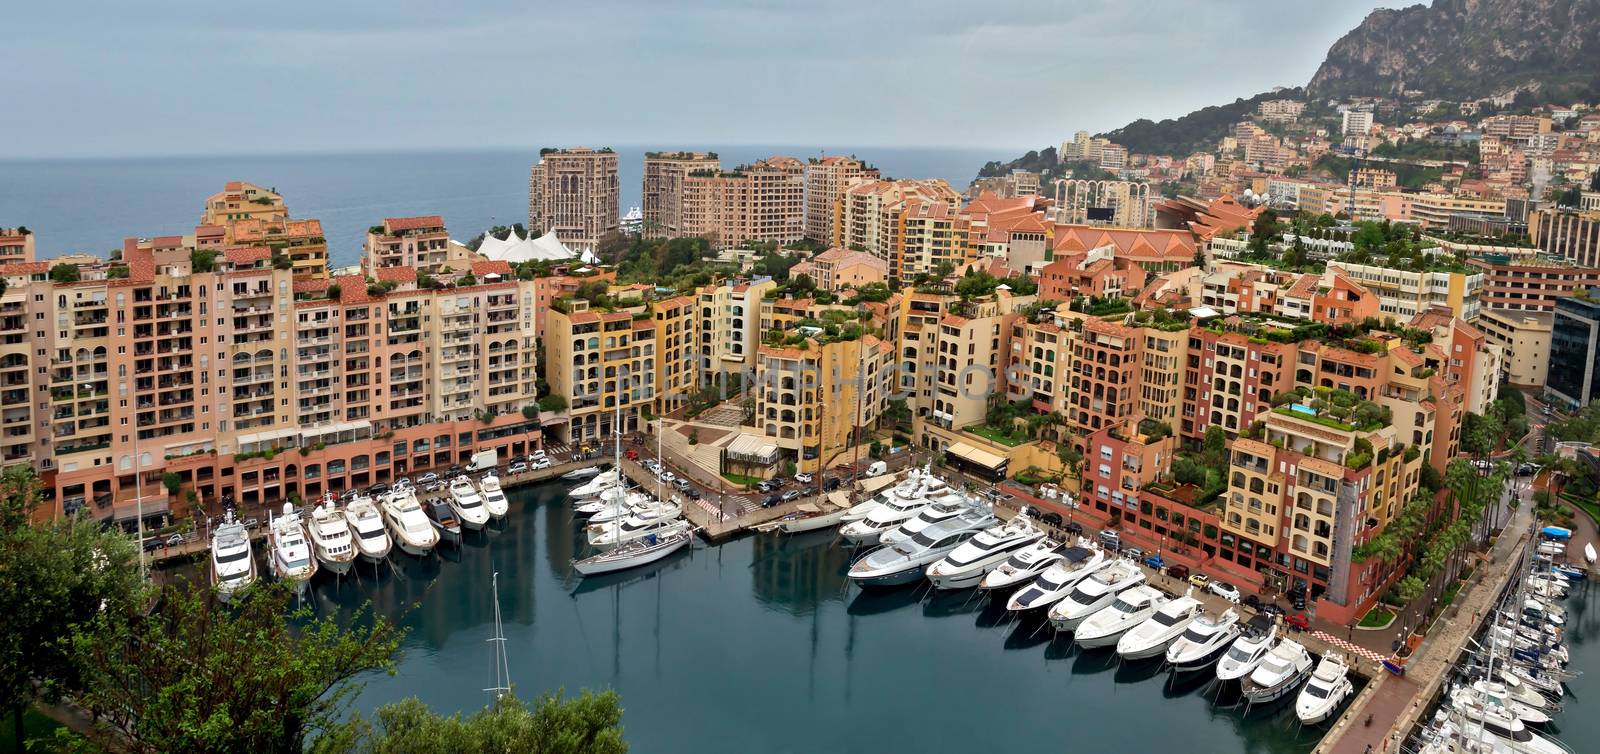 Monaco - Architecture Fontvieille district by Venakr